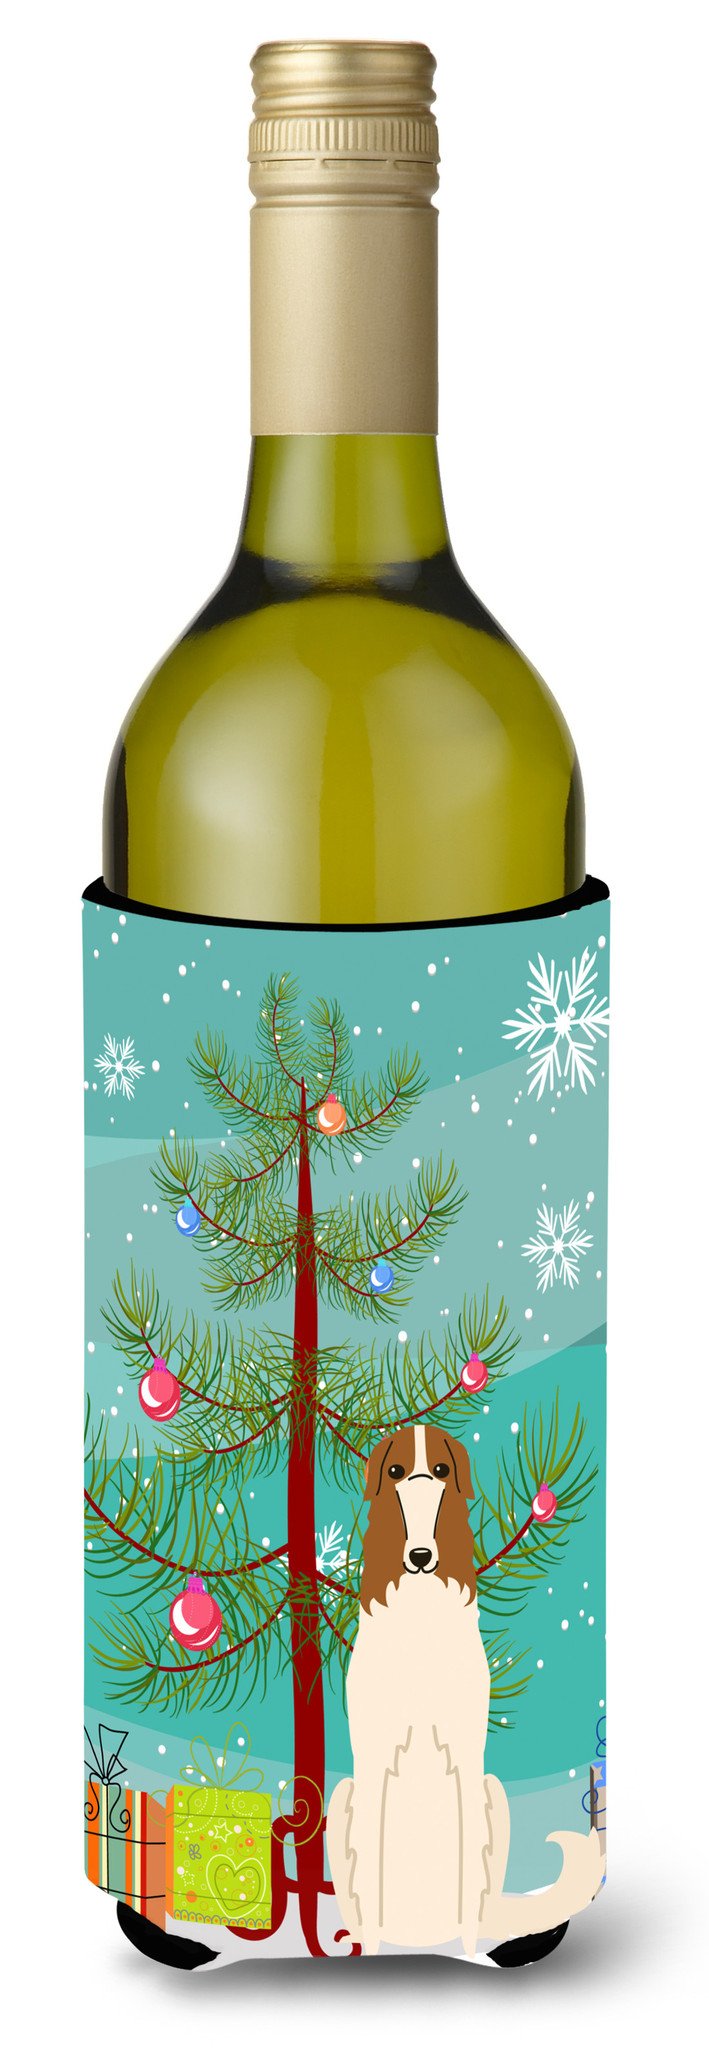 Merry Christmas Tree Borzoi Wine Bottle Beverge Insulator Hugger BB4148LITERK by Caroline's Treasures